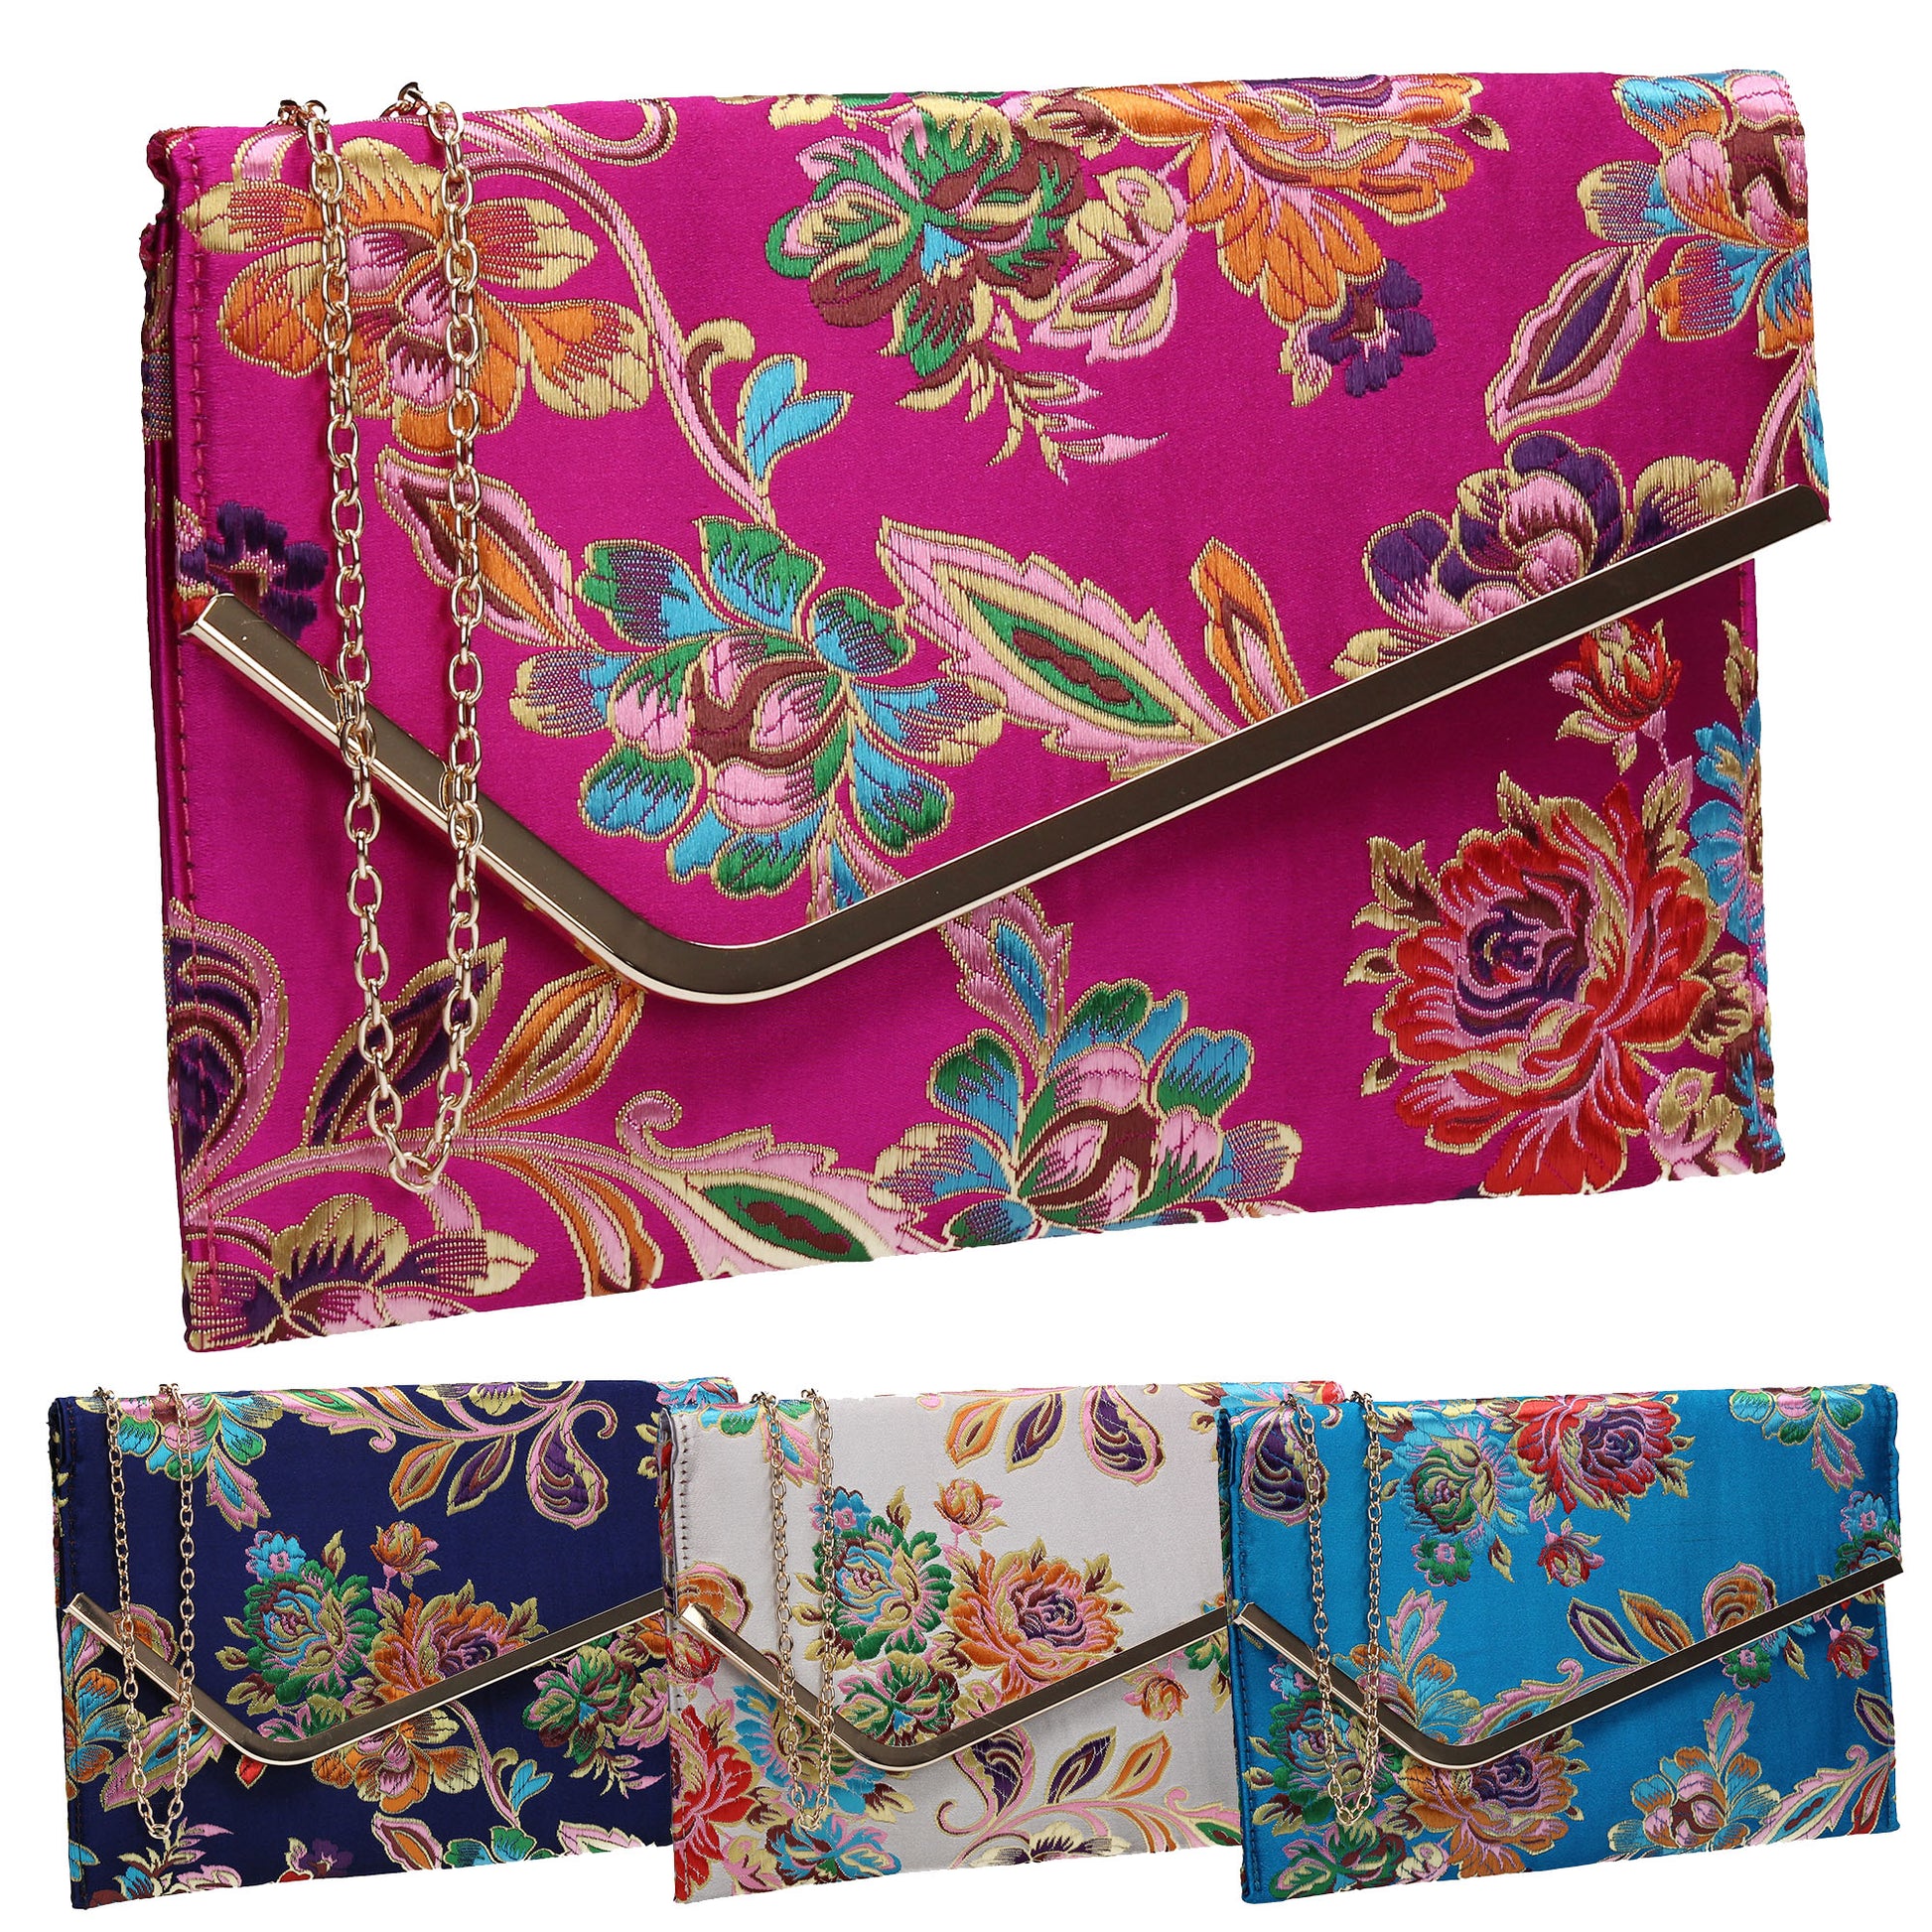 SWANKYSWANS Cedar Floral Slim Clutch Bag Fuschia Cute Cheap Clutch Bag For Weddings School and Work